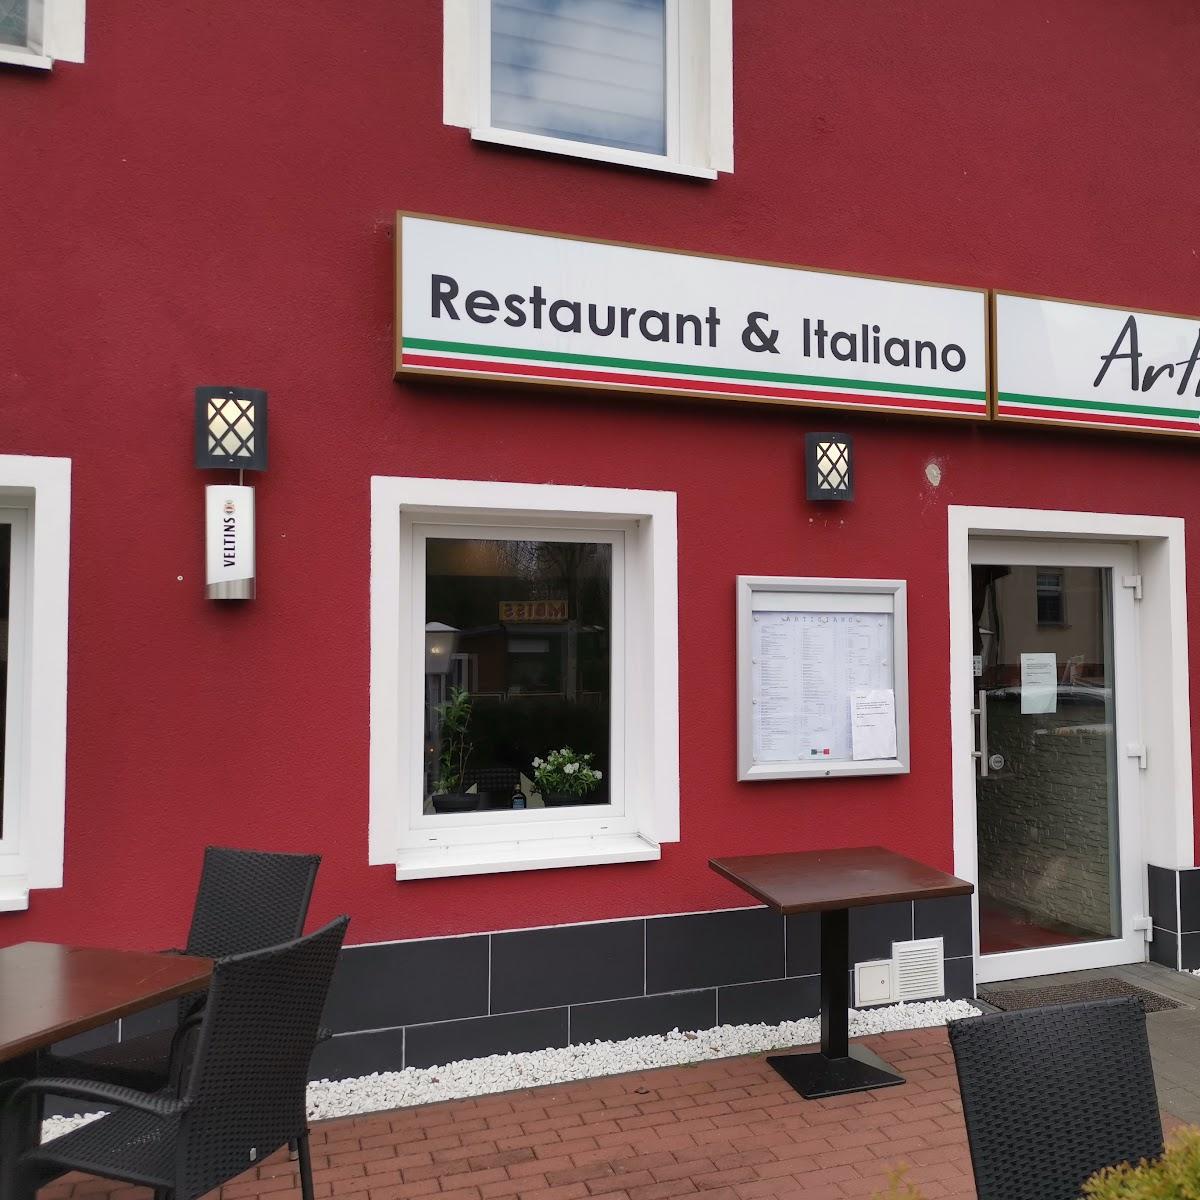 Restaurant "Artigiano" in Nauen